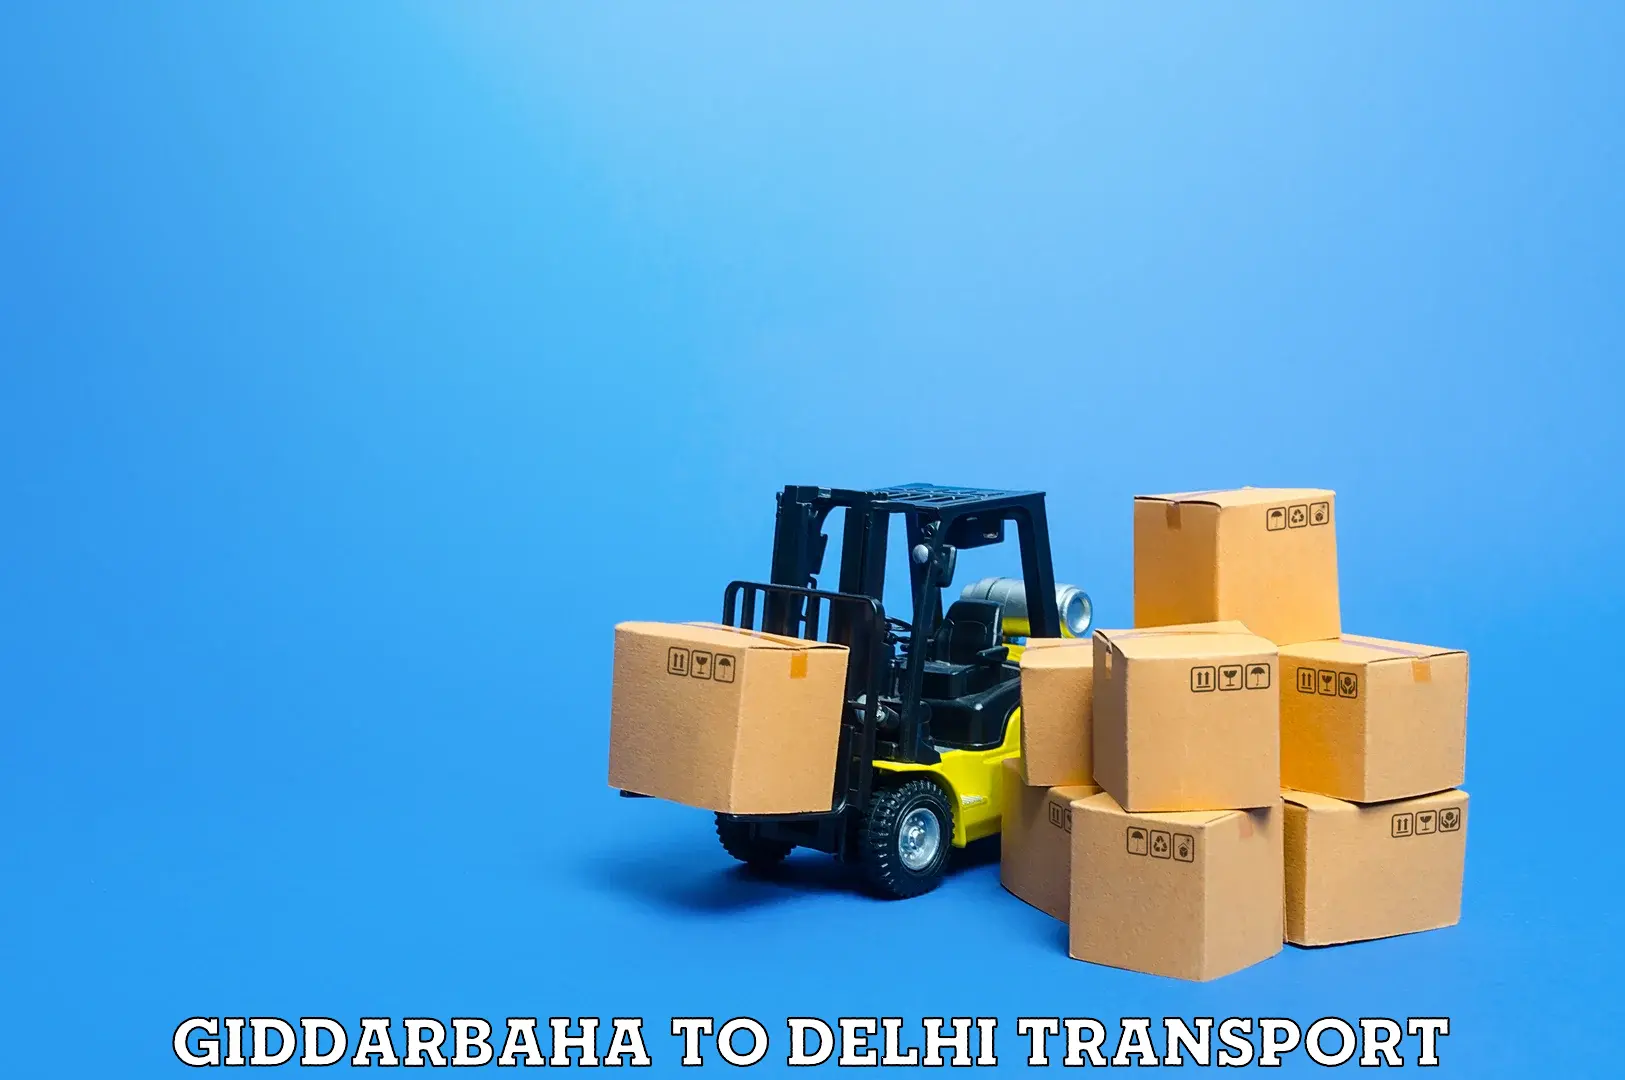 Transportation solution services Giddarbaha to University of Delhi